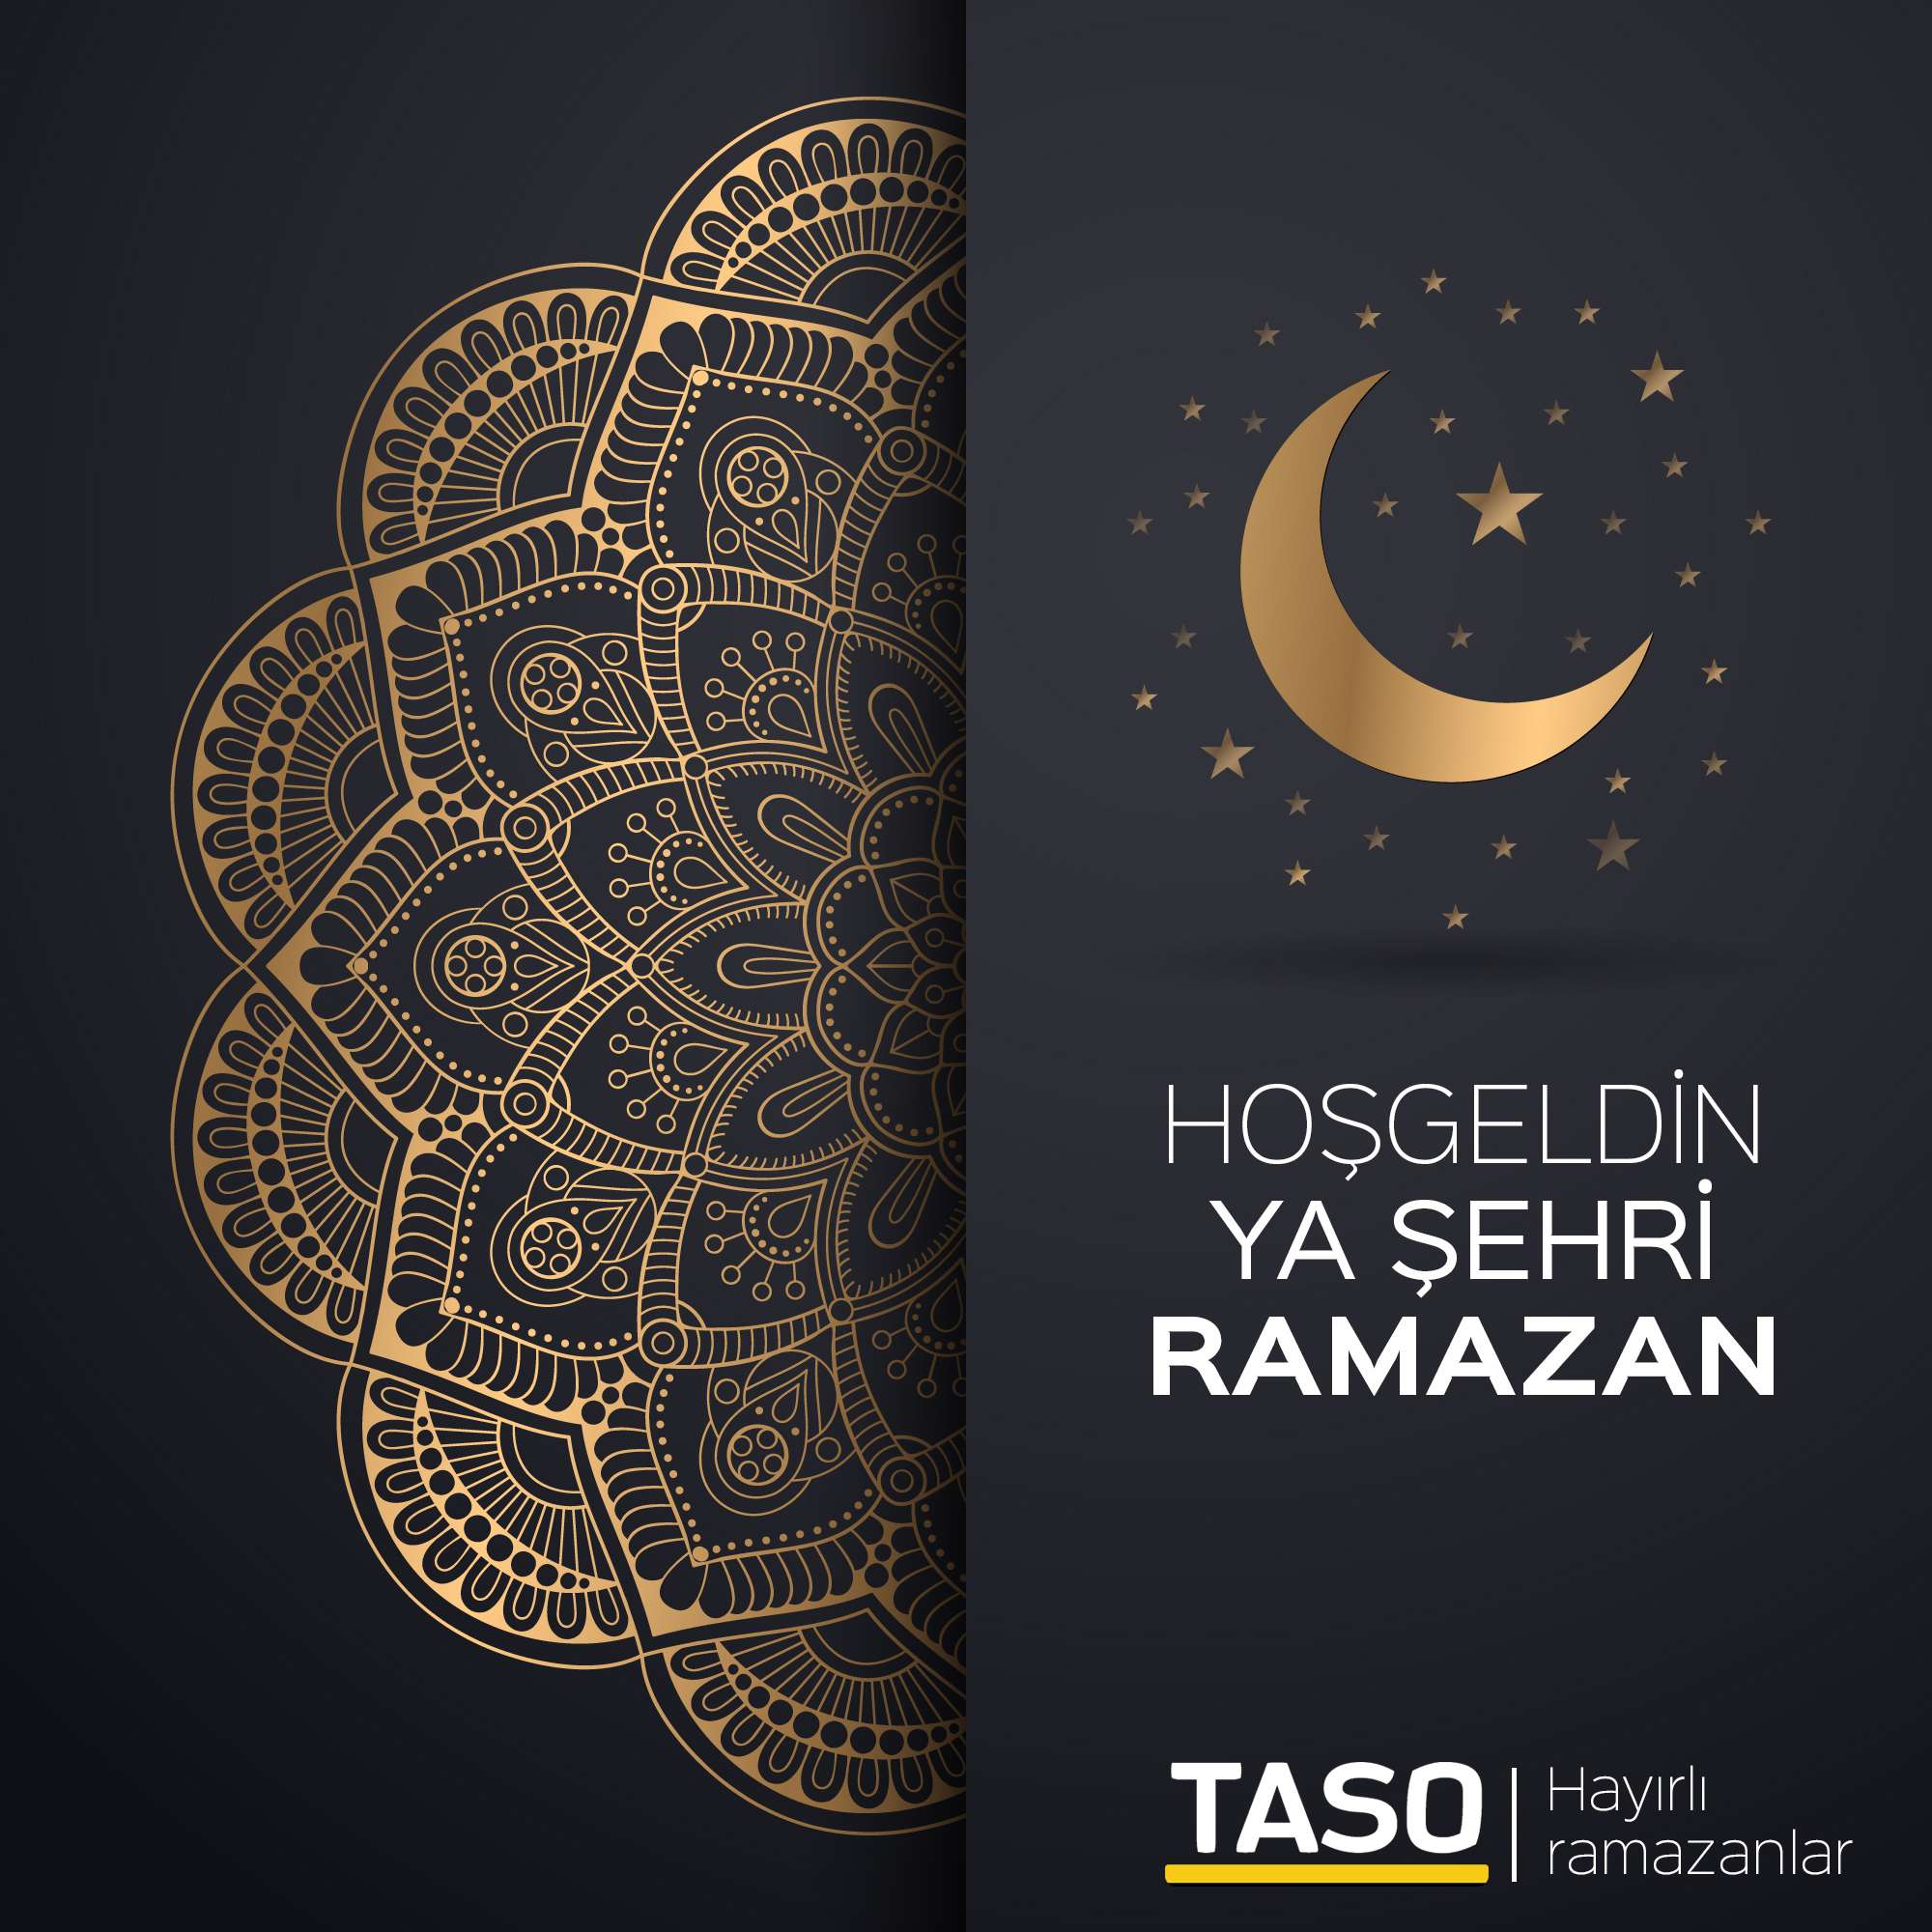 Hoşgeldin Ya Şehri Ramazan!